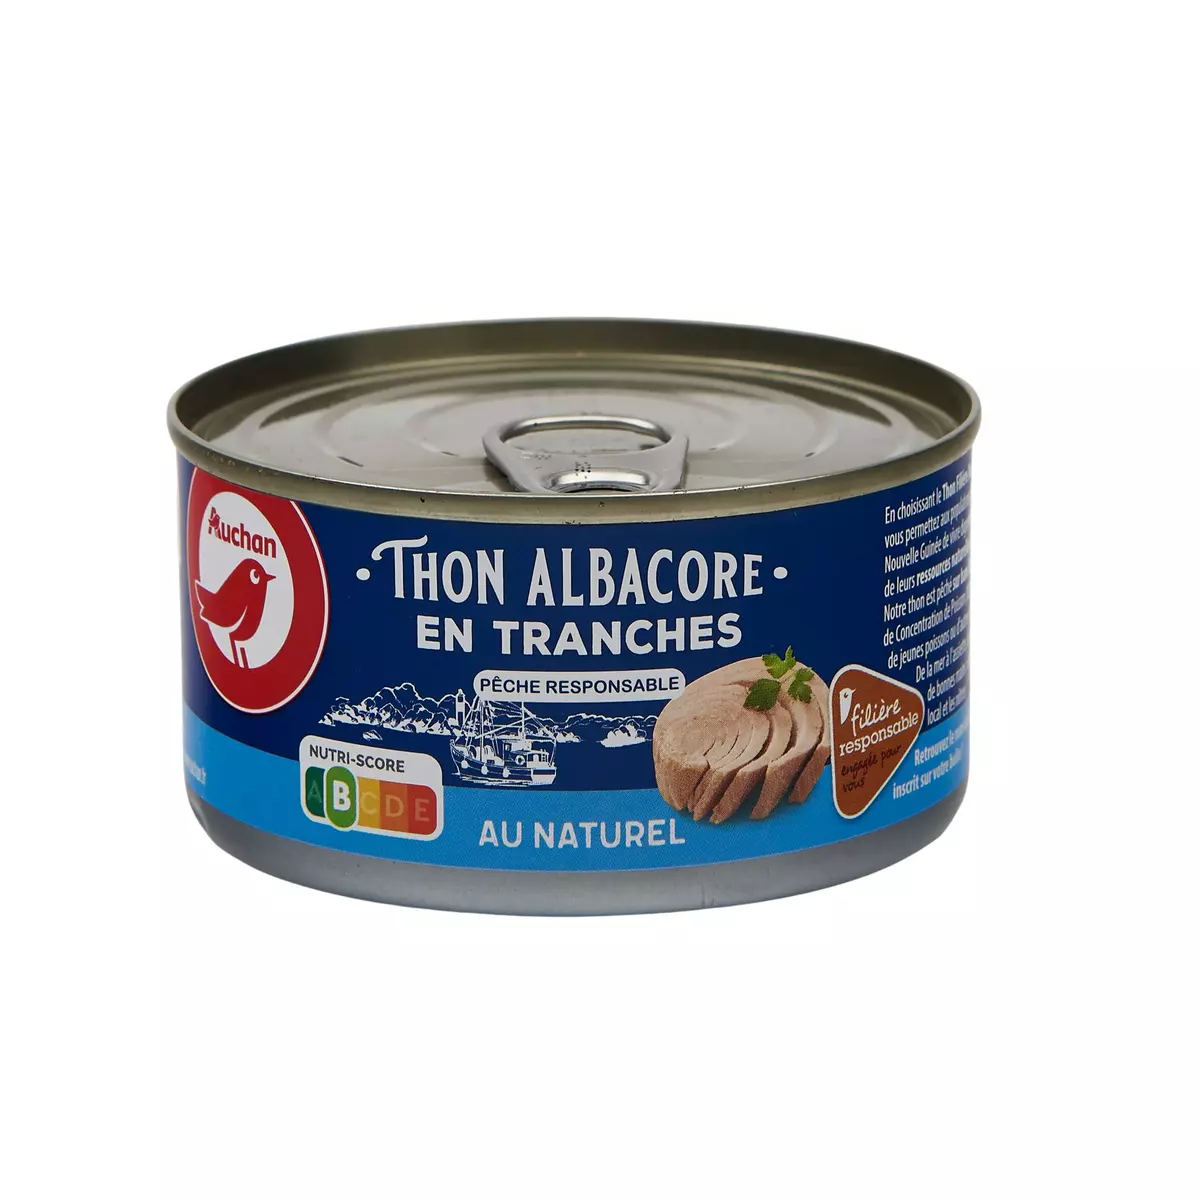 AUCHAN CULTIVONS LE BON thon albacore en tranches au naturel  140g